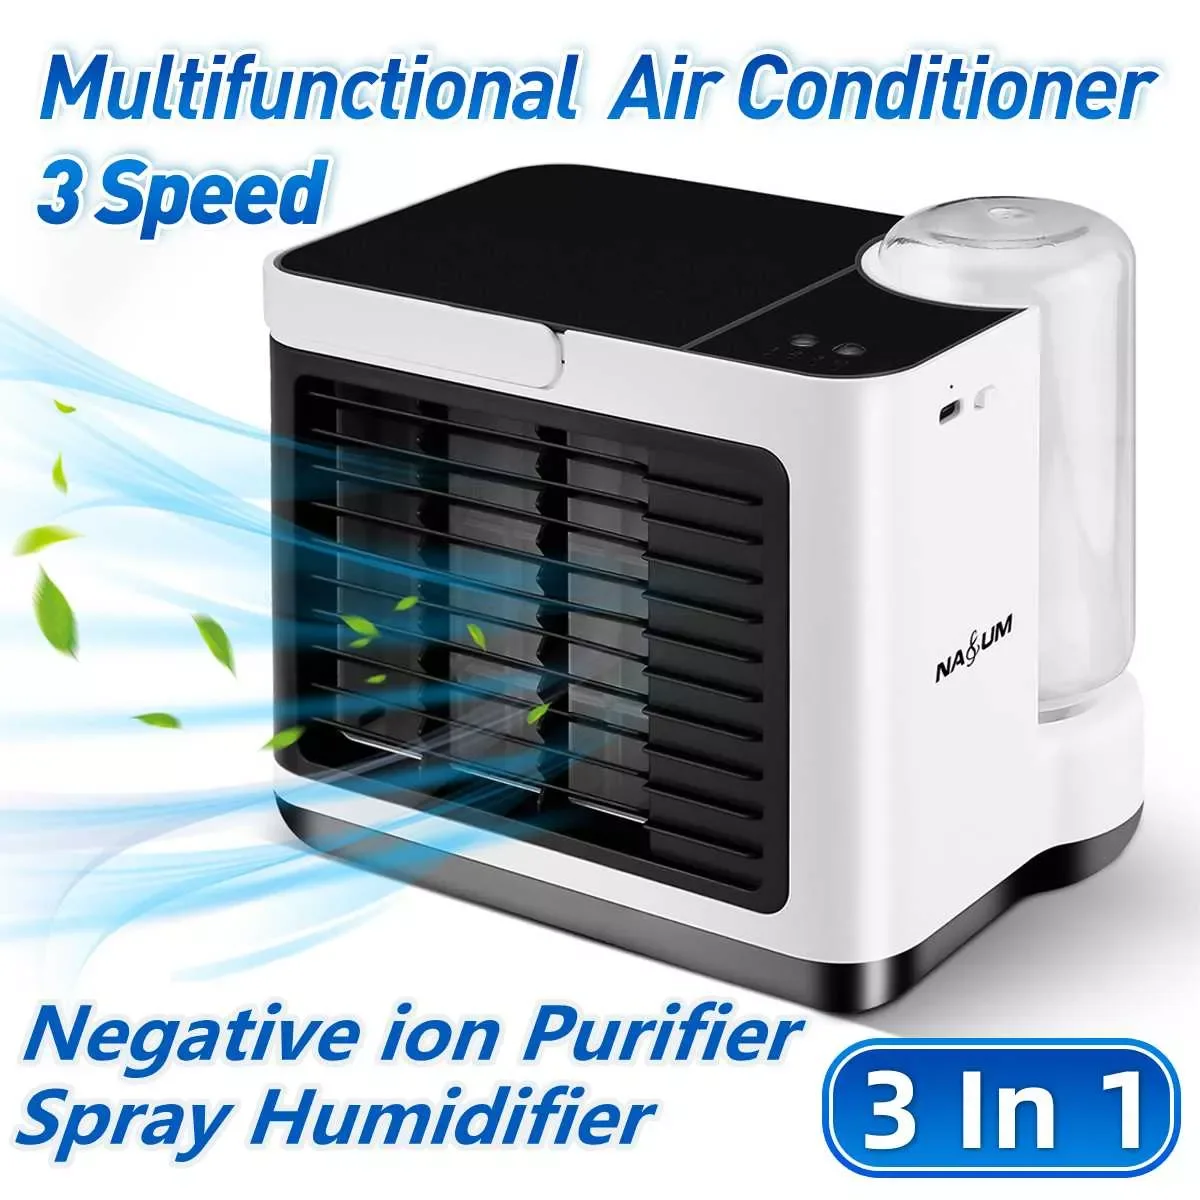 

Портативный вентилятор для кондиционирования воздуха, настольный мини-кондиционер с анионным очистителем и увлажнителем воздуха, USB, 3 скор...